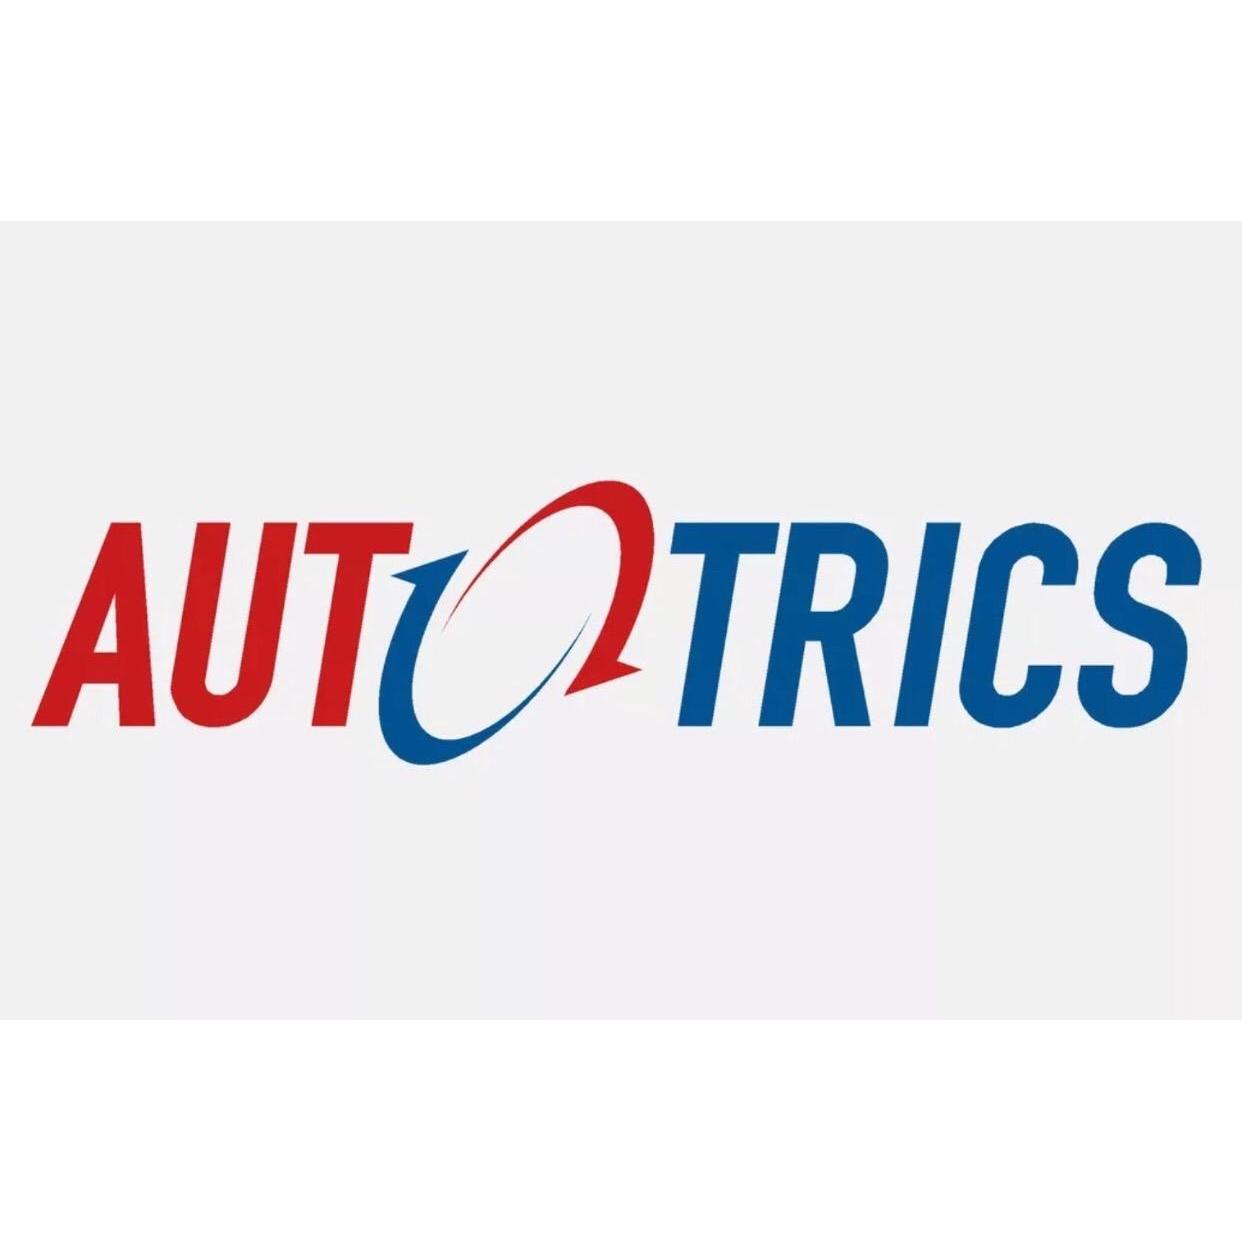 Autotrics Vehicle Repair Logo